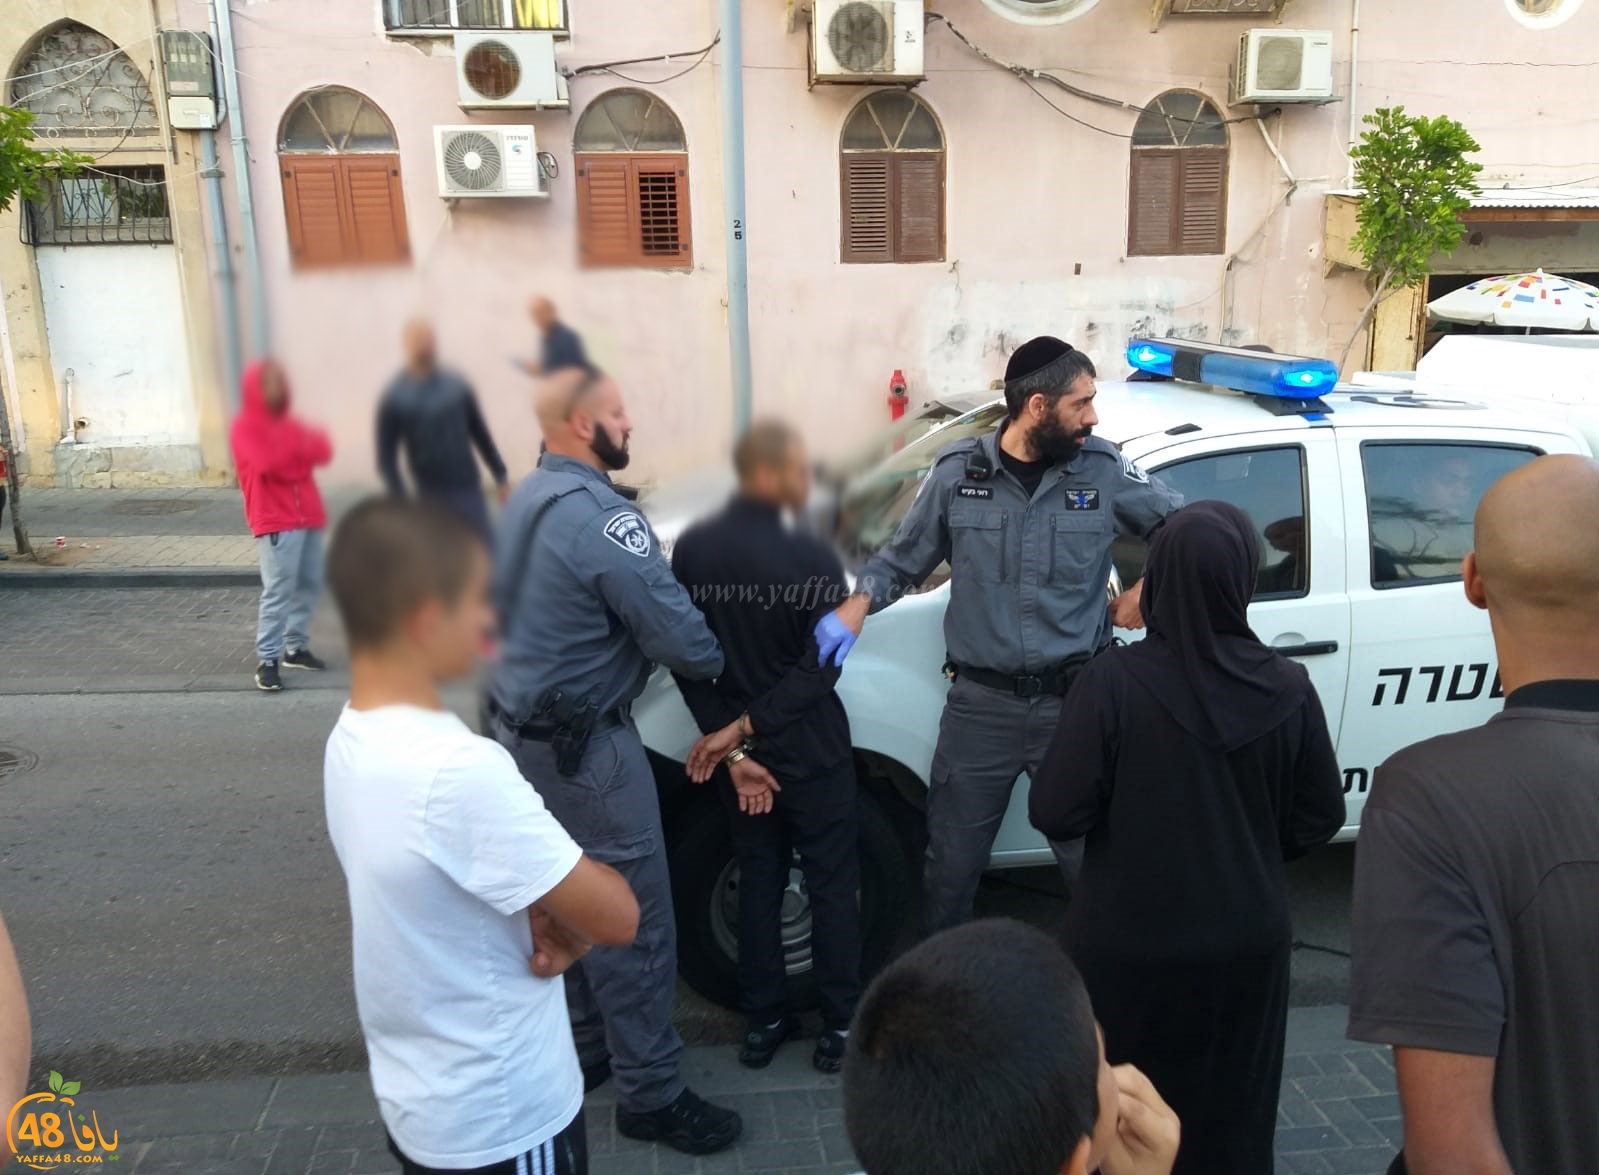  بالفيديو: الشرطة تعتقل 3 قاصرين في مدينة يافا دون إيضاح الأسباب